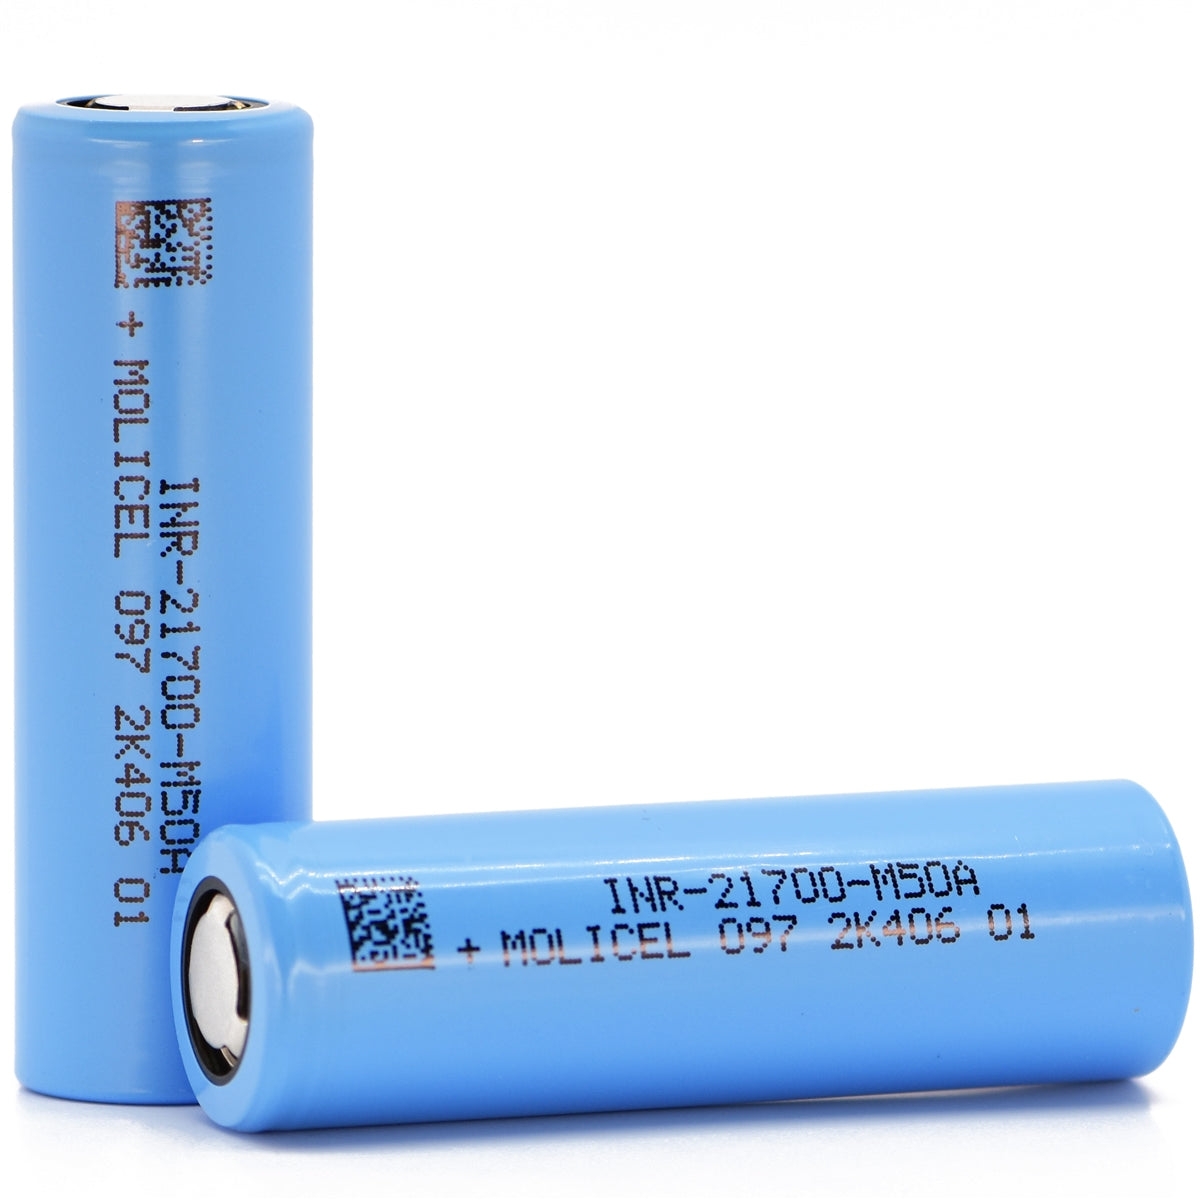 Paquete de batería de litio Molicel 21700 M50A de rendimiento perfecto a baja temperatura